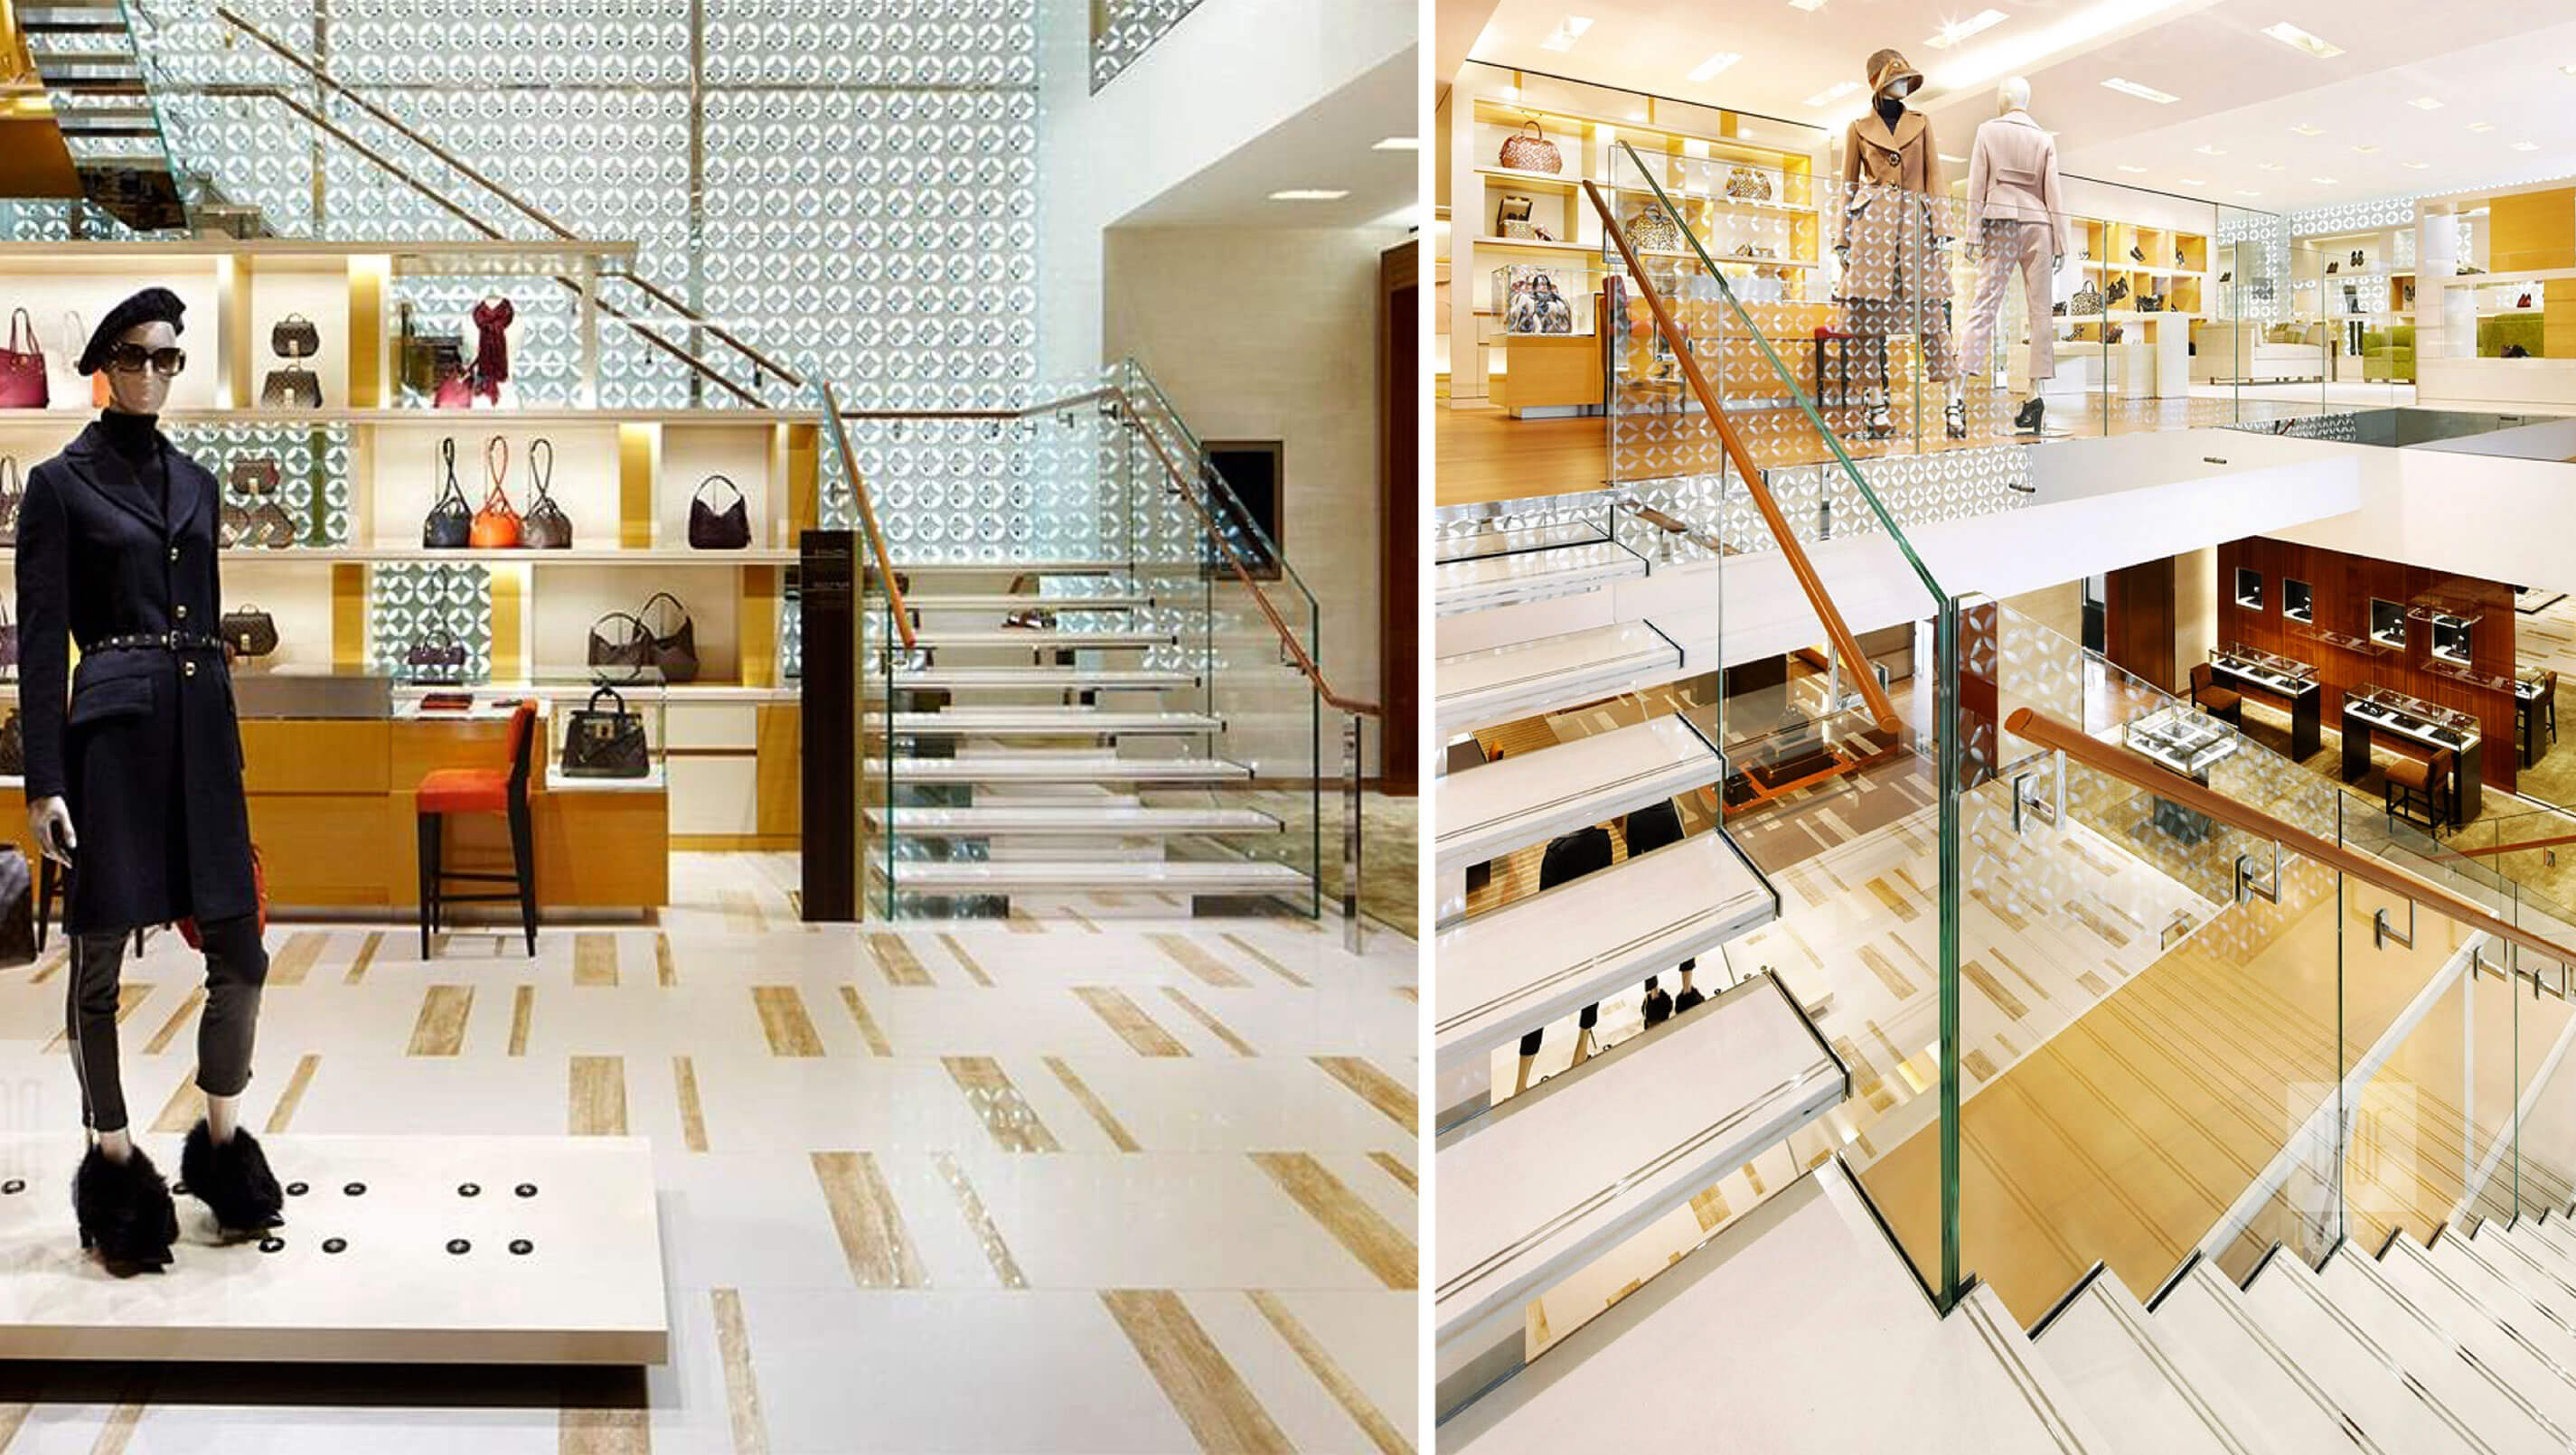 Louis Vuitton Stores  dkstudio architects inc.